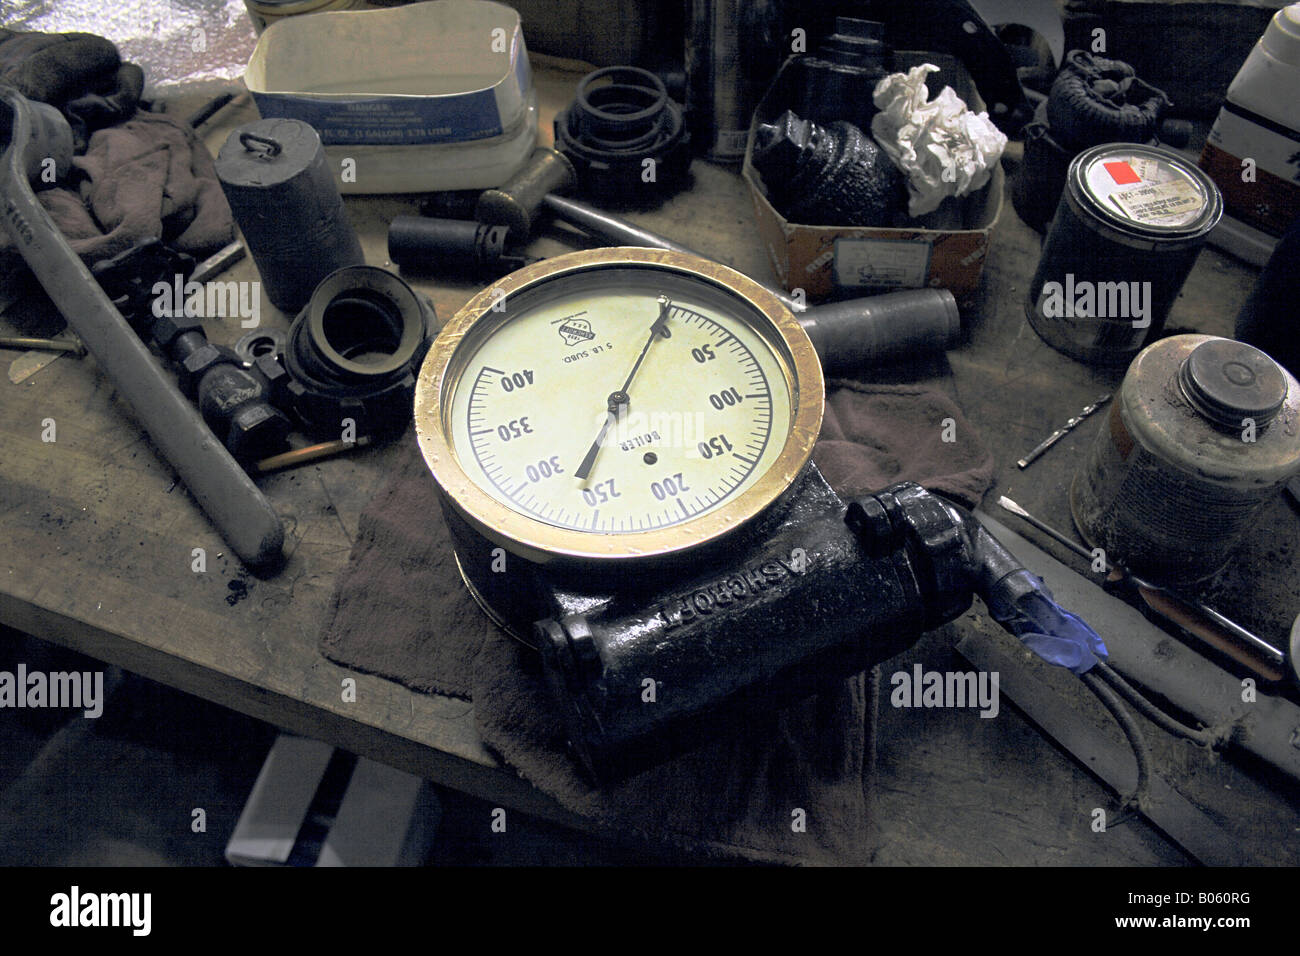 Schmutzige Werkbank mit Werkzeuge, Dosen und sonstige Gegenstände eine Messuhr Ashcroft Kessel Druck. Stockfoto